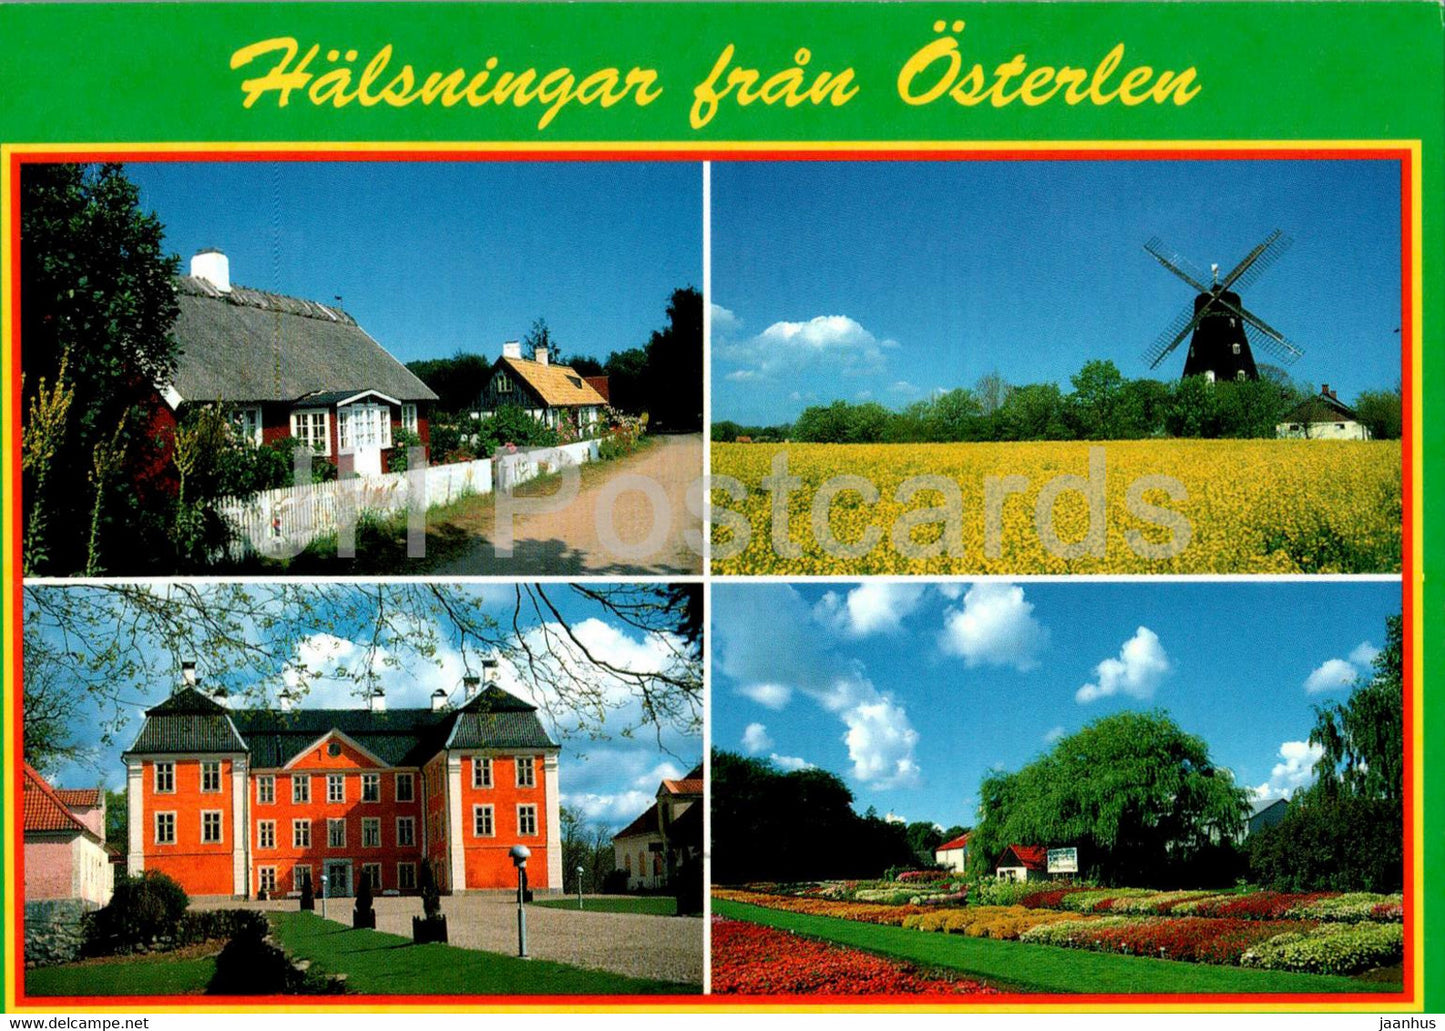 Halsningar fran Osterlen - multiview - Sweden - used - JH Postcards